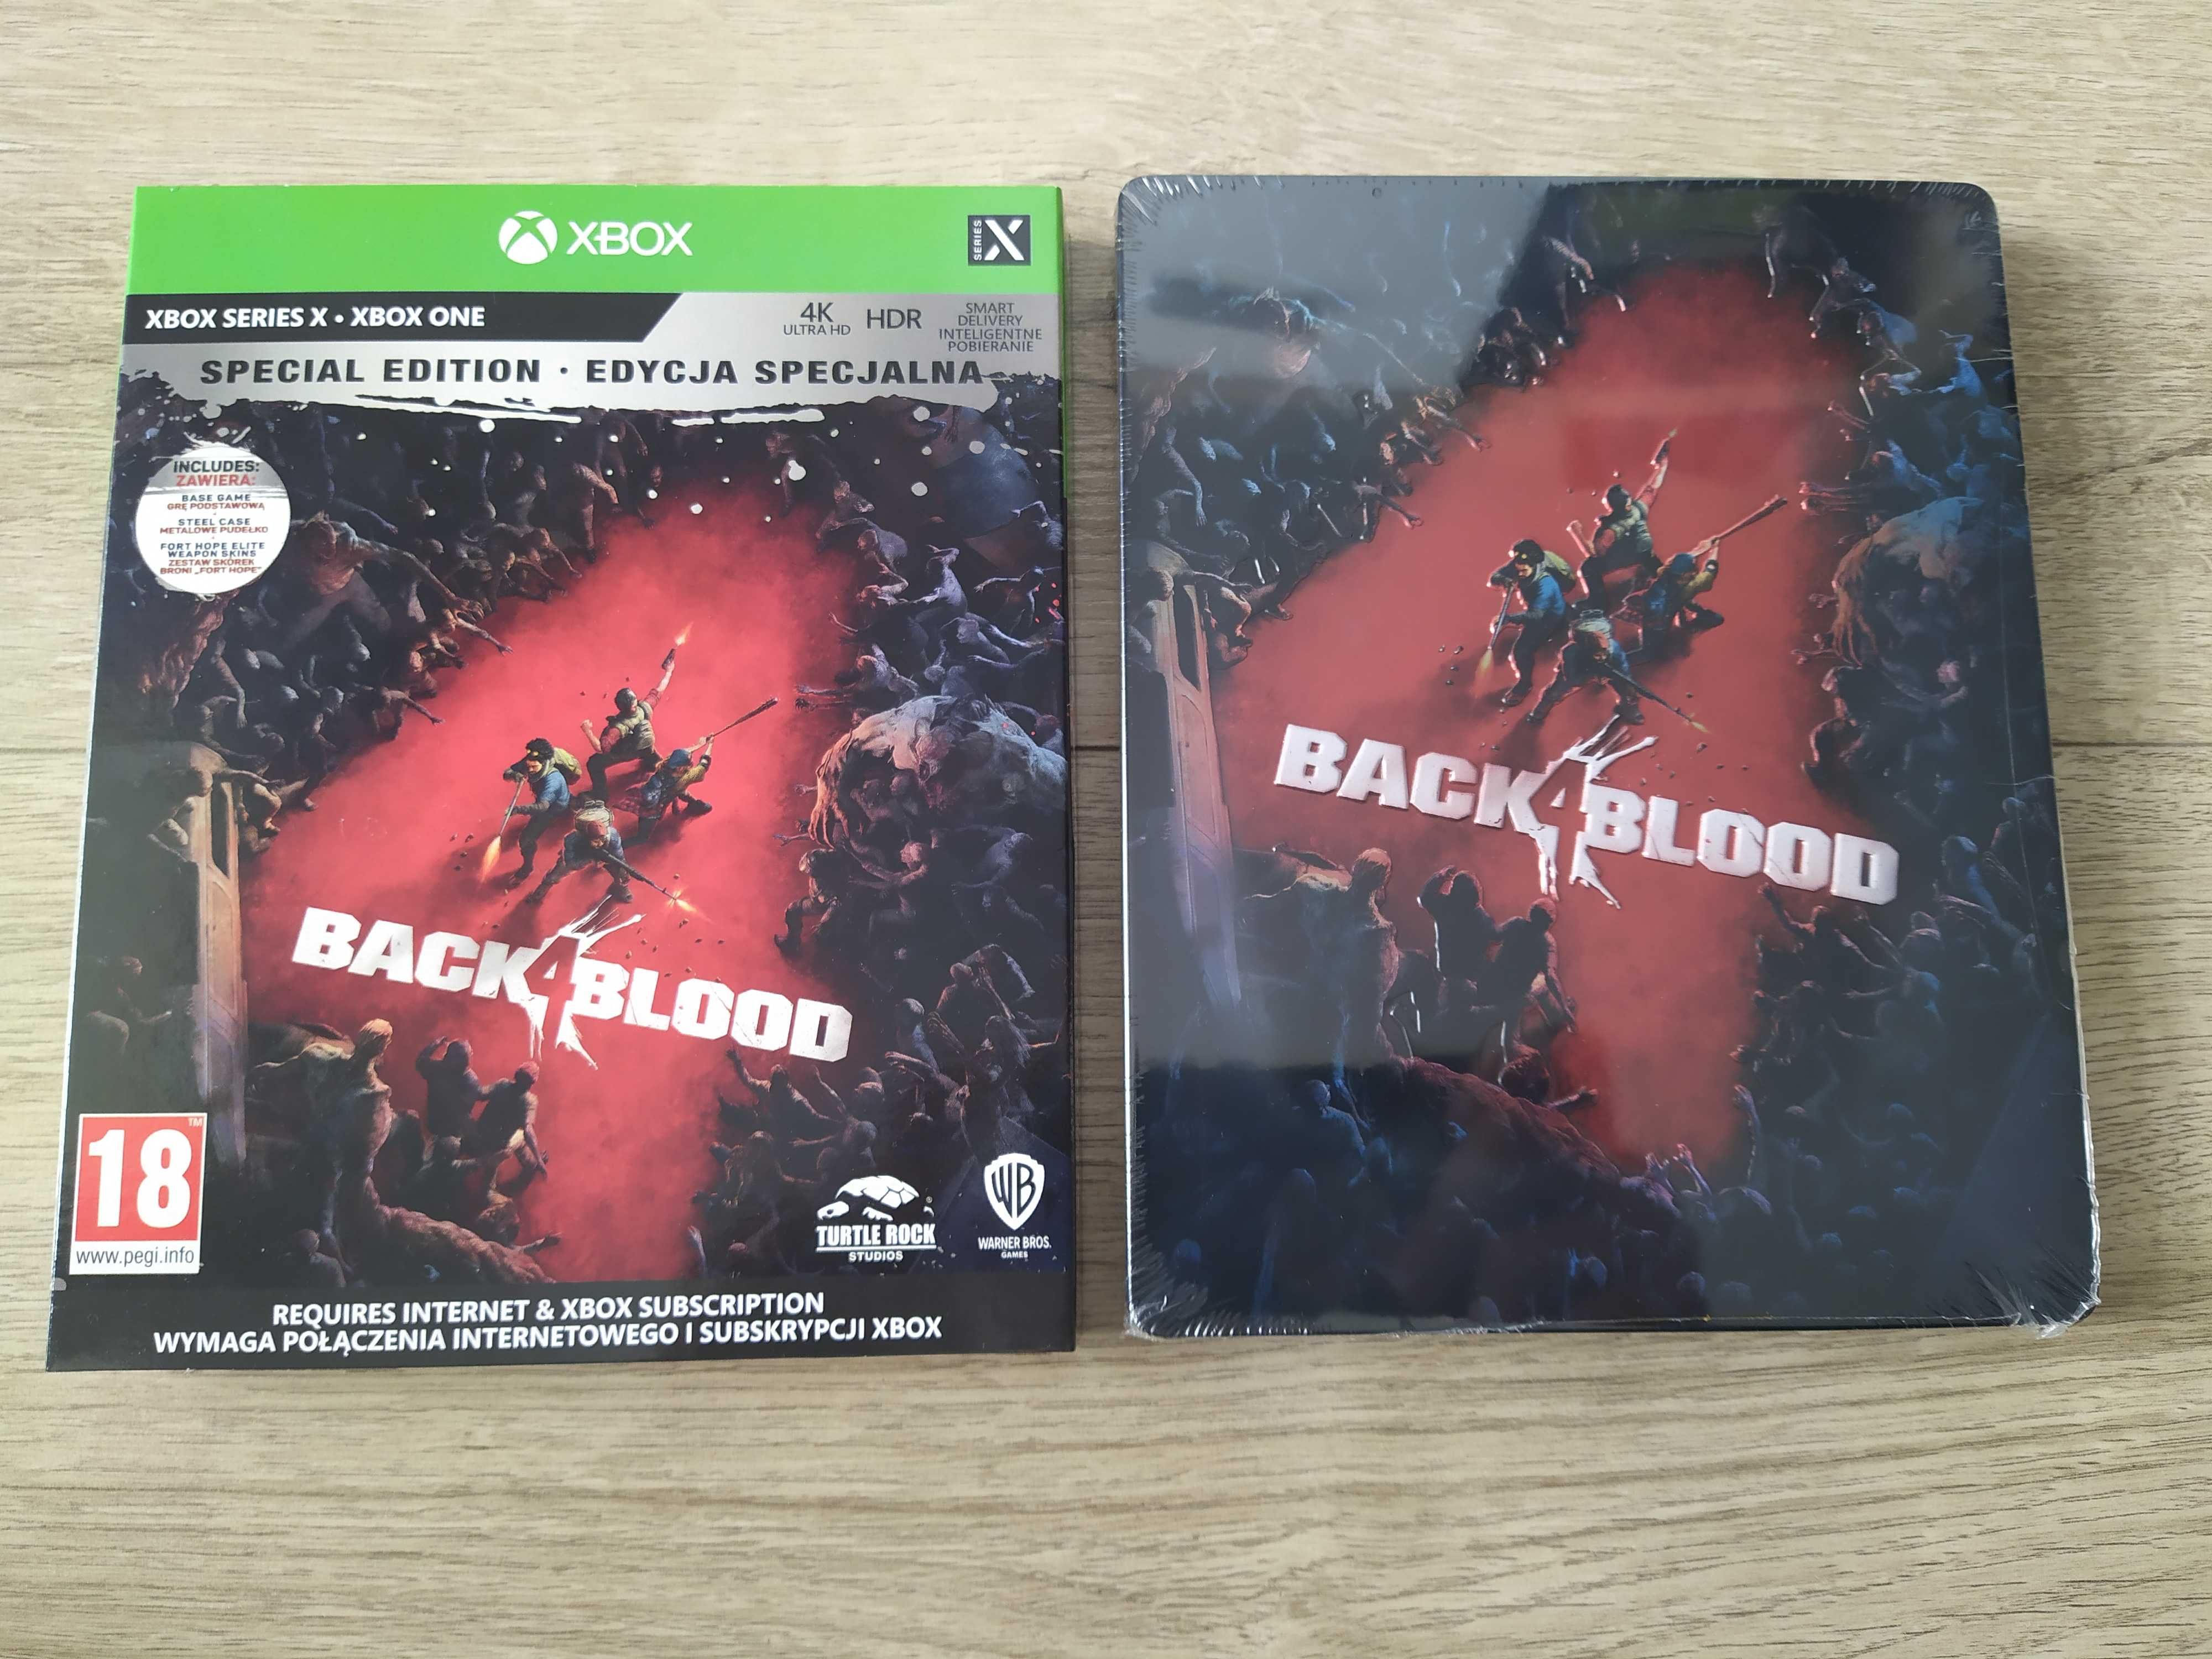 Back 4 Blood Edycja Specjalna - Steelbook [XBOX] (PL) NOWA W FOLII